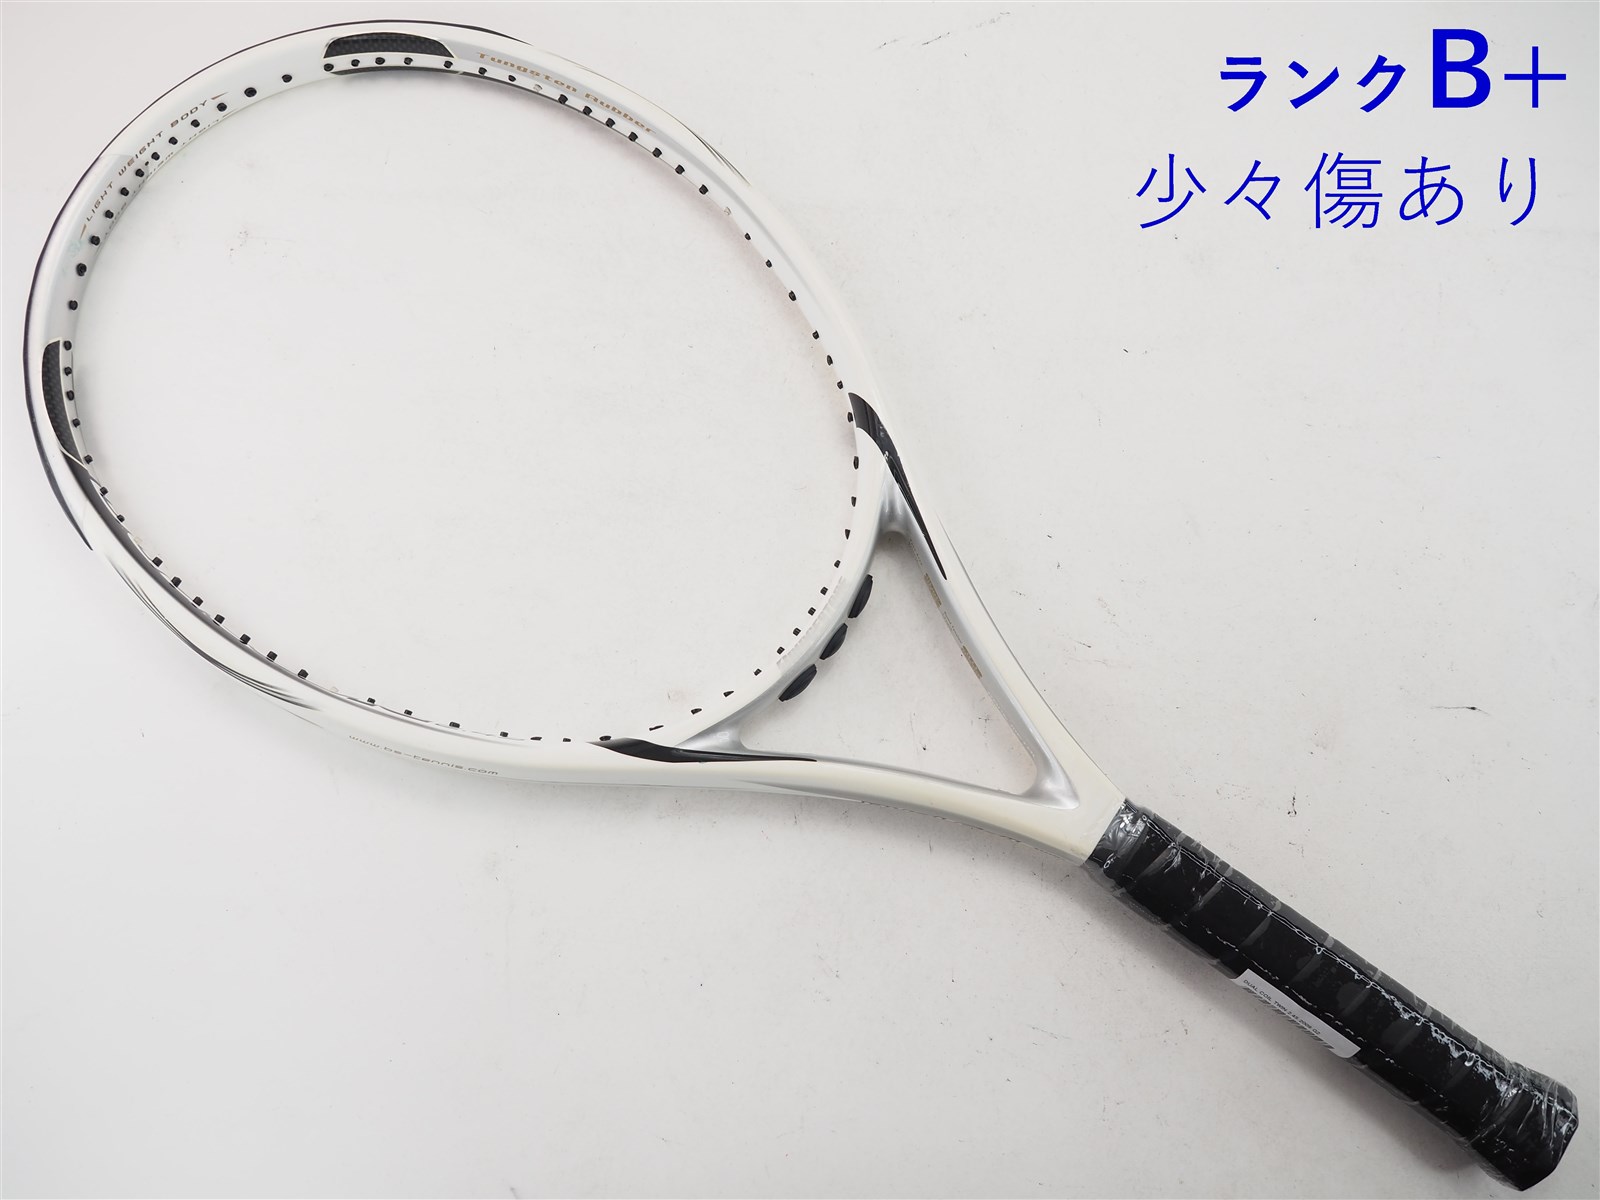 ブリジストンラケット デュアルコイル300 G2 - テニス